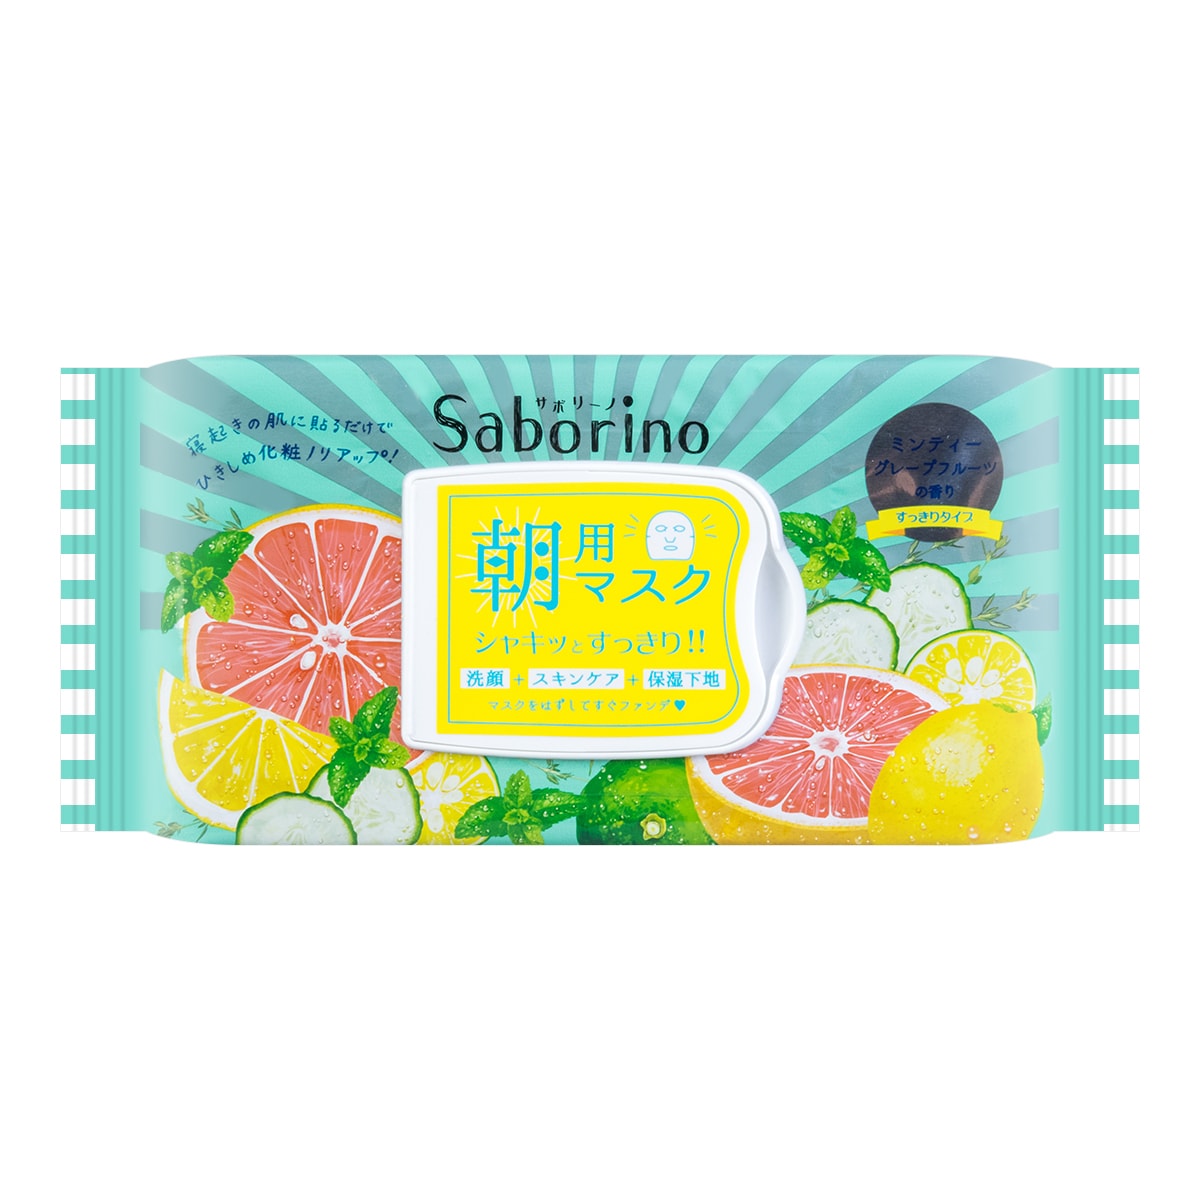 日本BCL SABORINO 60秒懒人 早安面膜 西柚香型 32片入 怎么样 - 亚米网